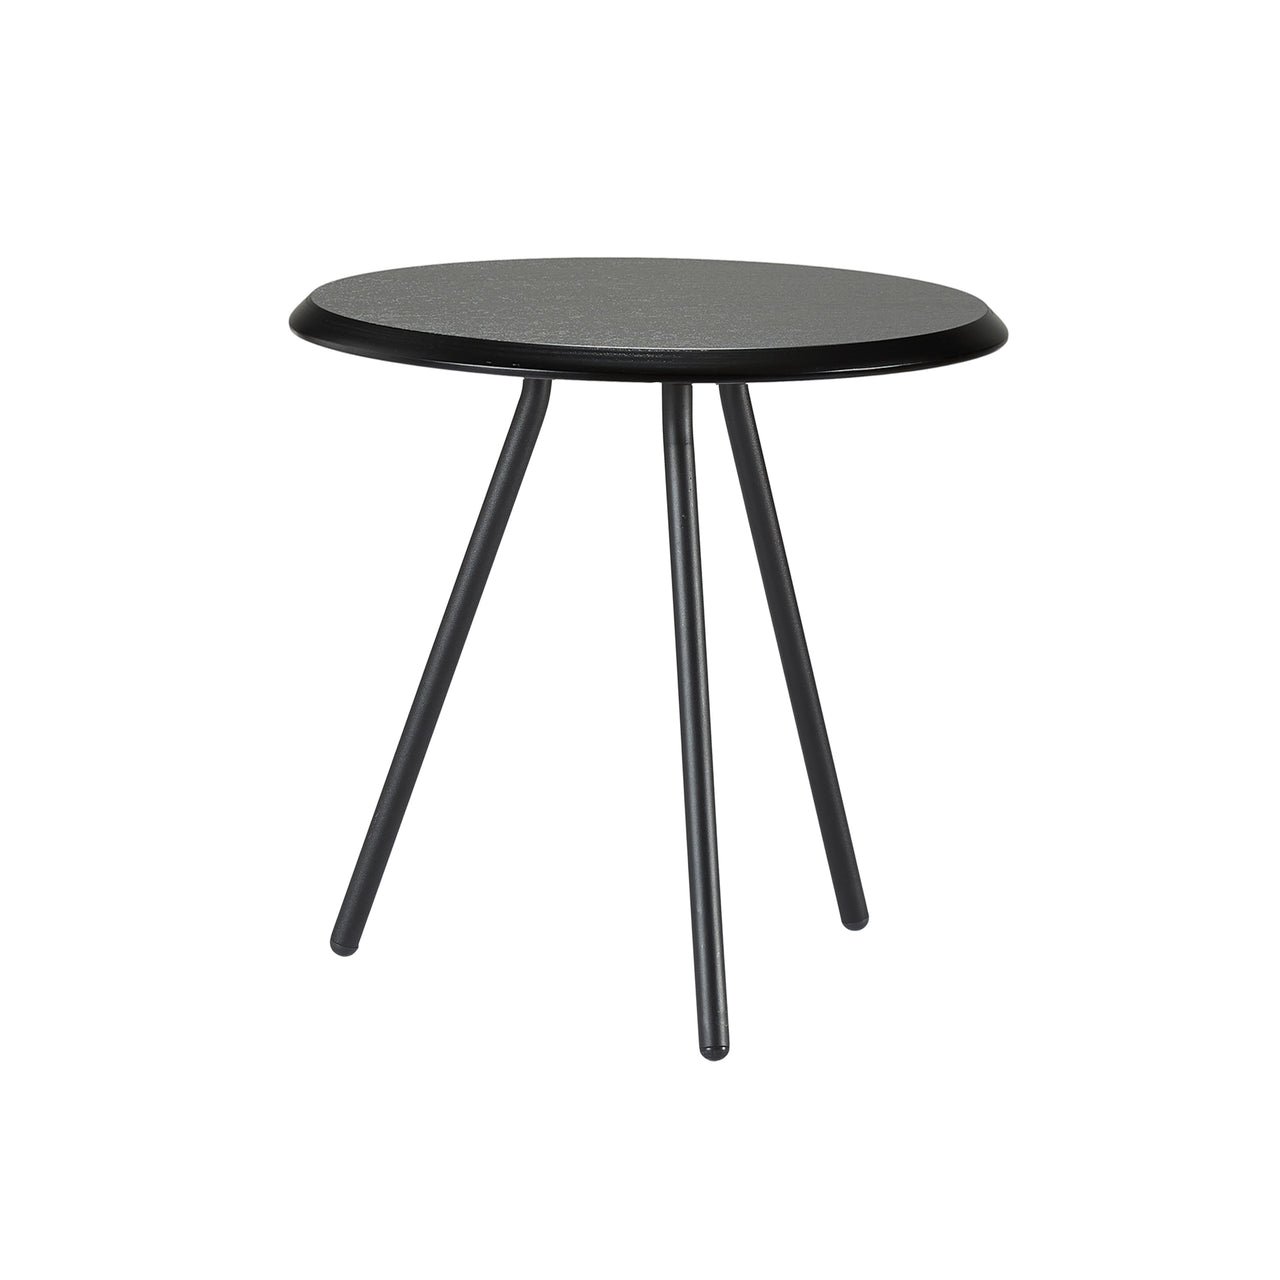 Soround Side Table: Medium + Black Painted Ash